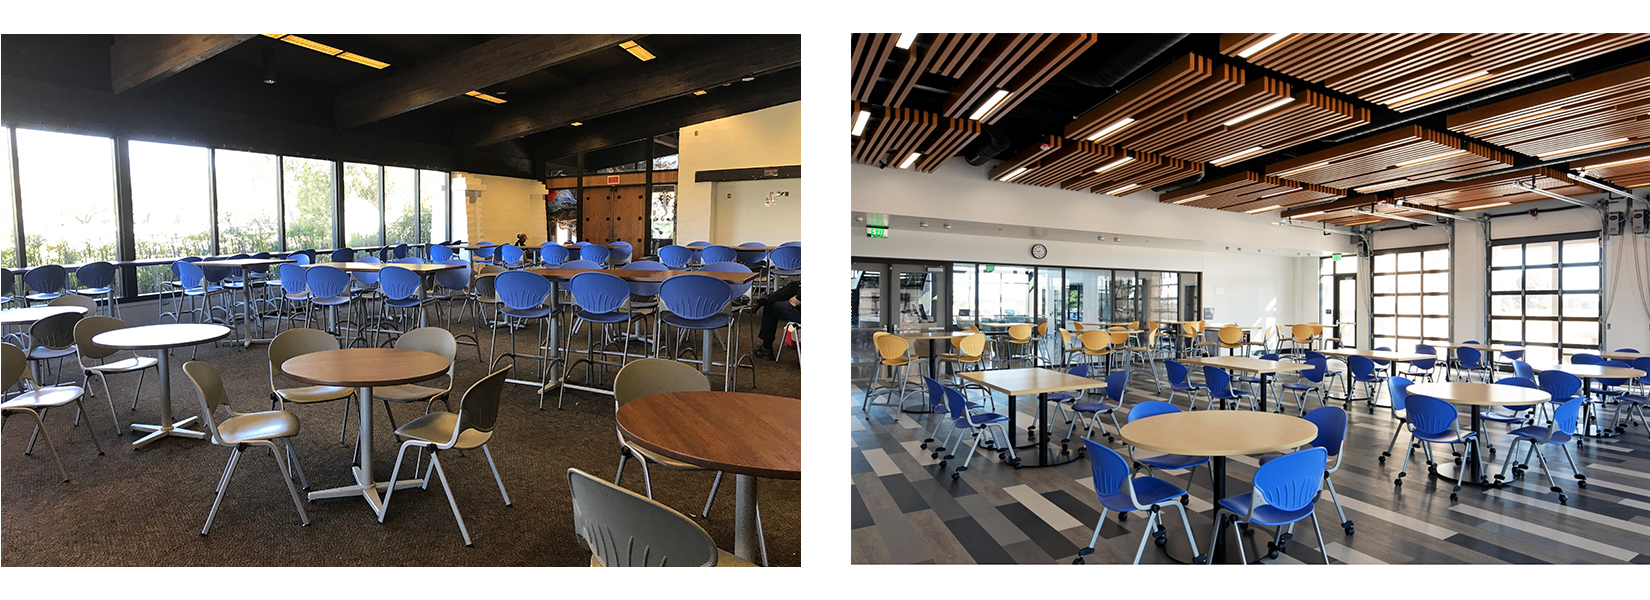 San Luis Obispo and North County campus cafeterias